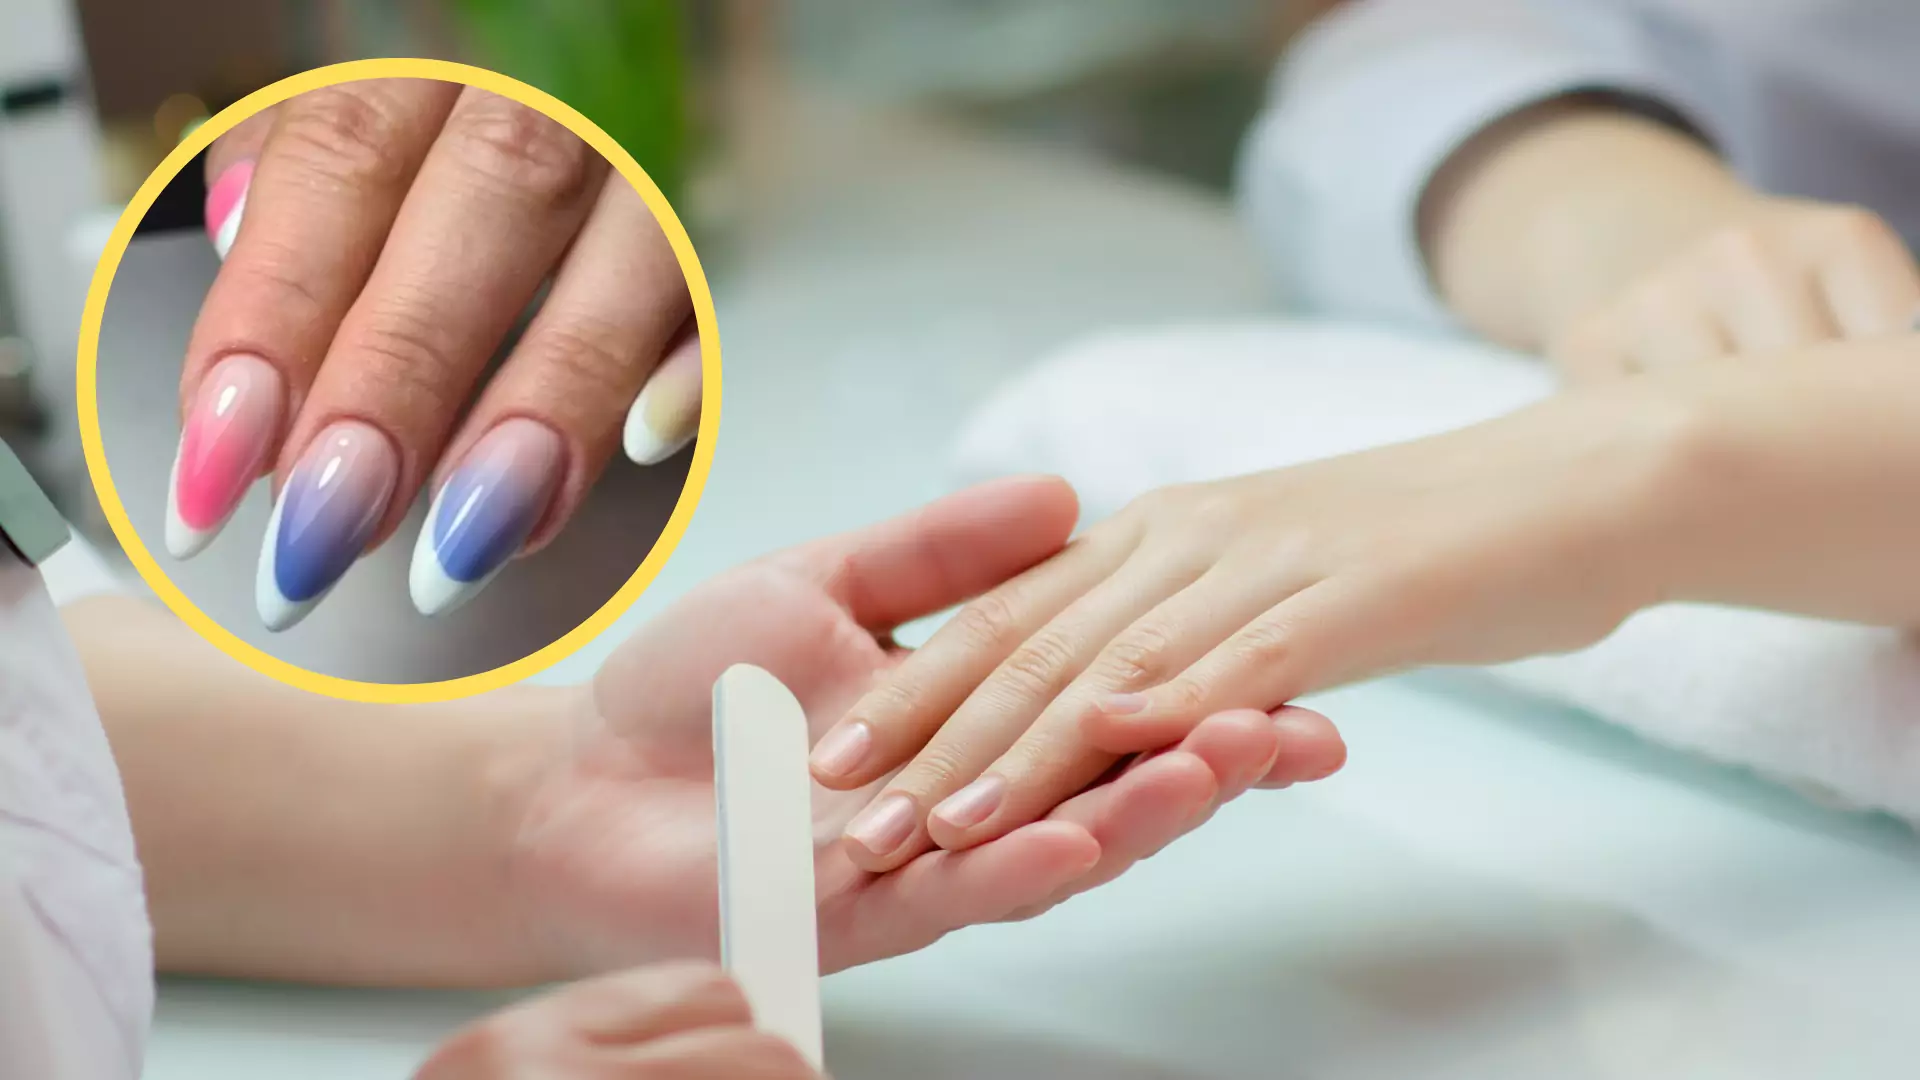 Nowa technika malowania paznokci podbija Instagram. Frombre jest idealne dla każdego